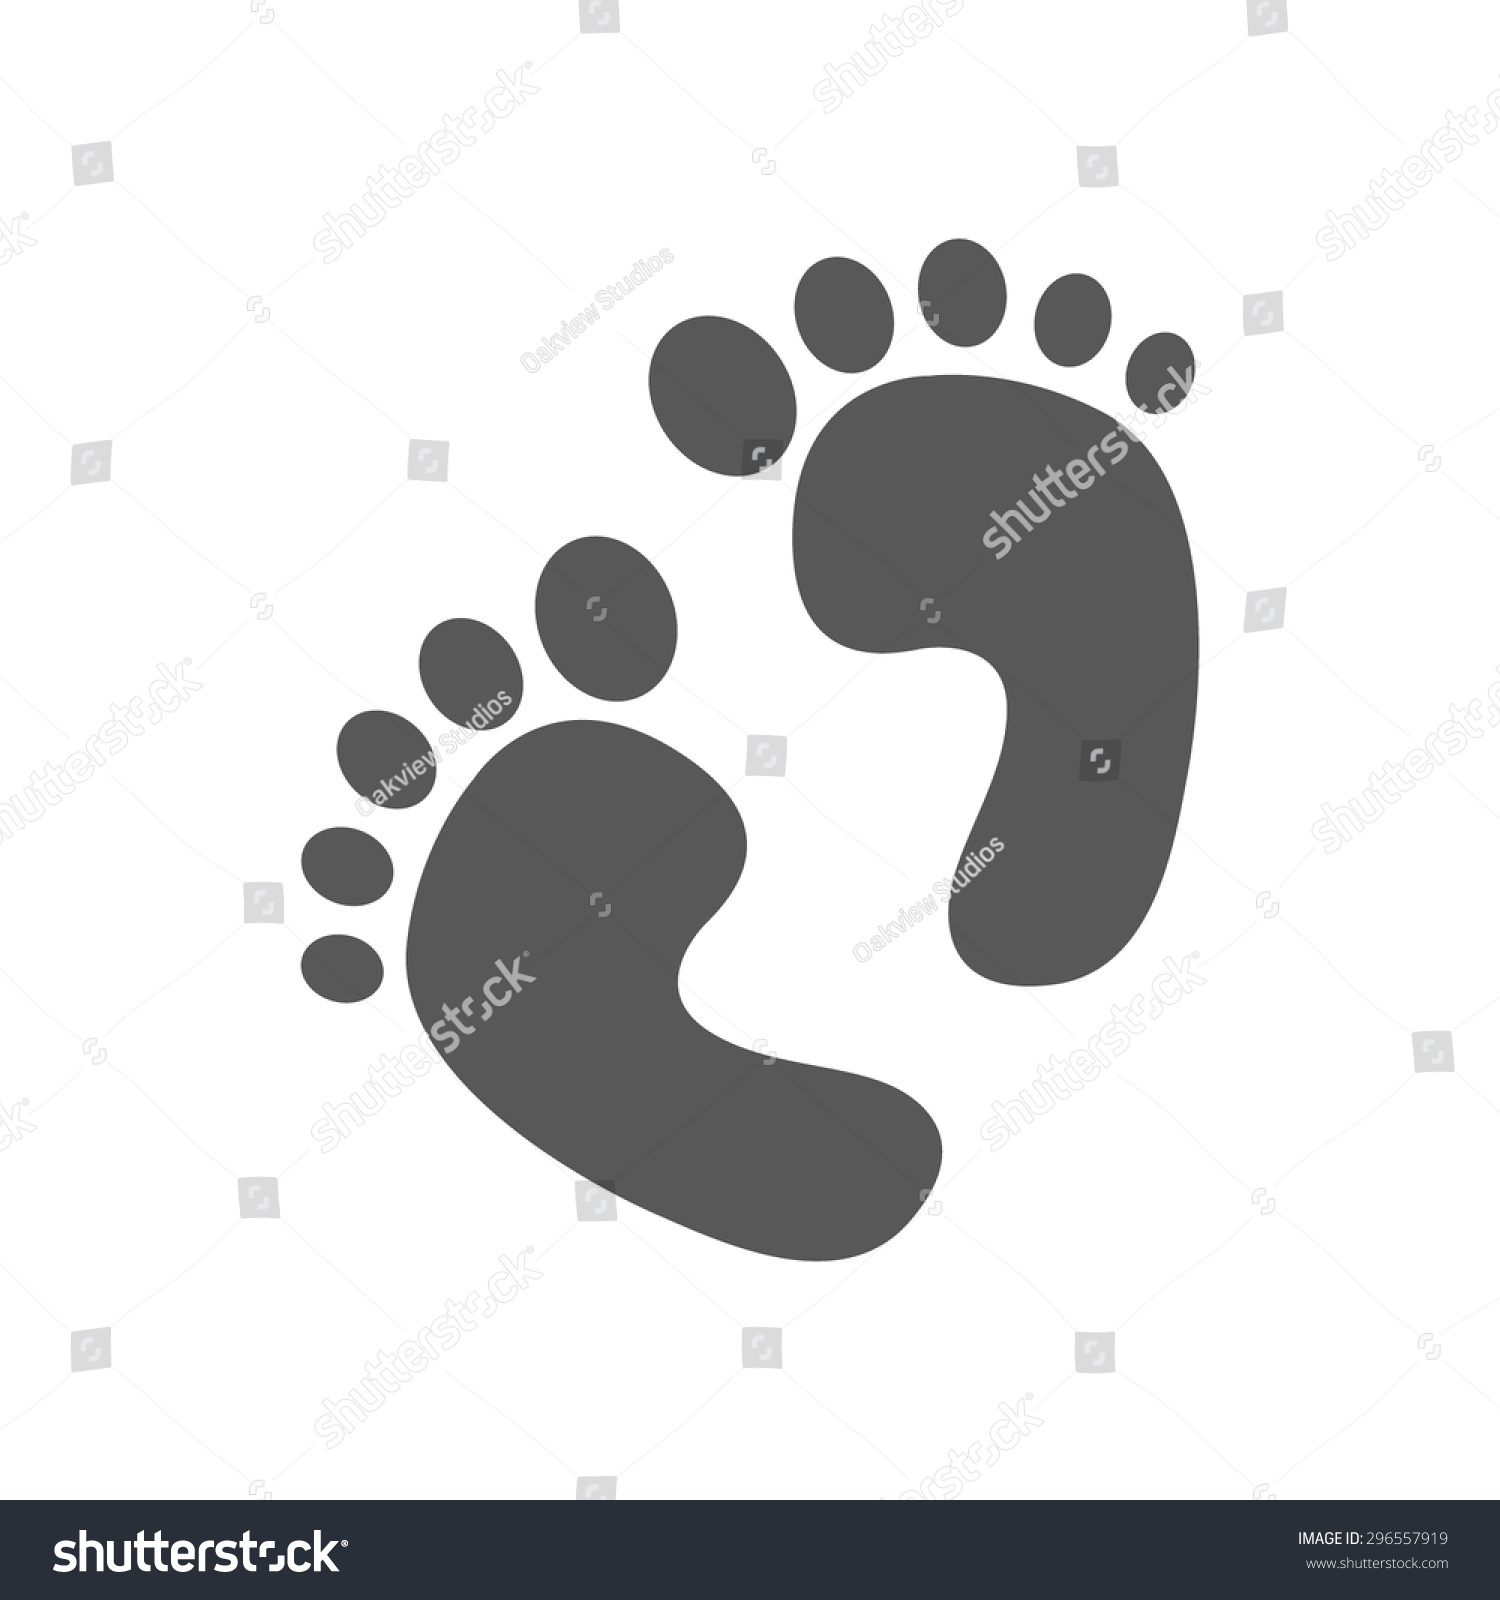 Baby Footprints Vector Illustration Stock Vector 296557919 - Shutterstock